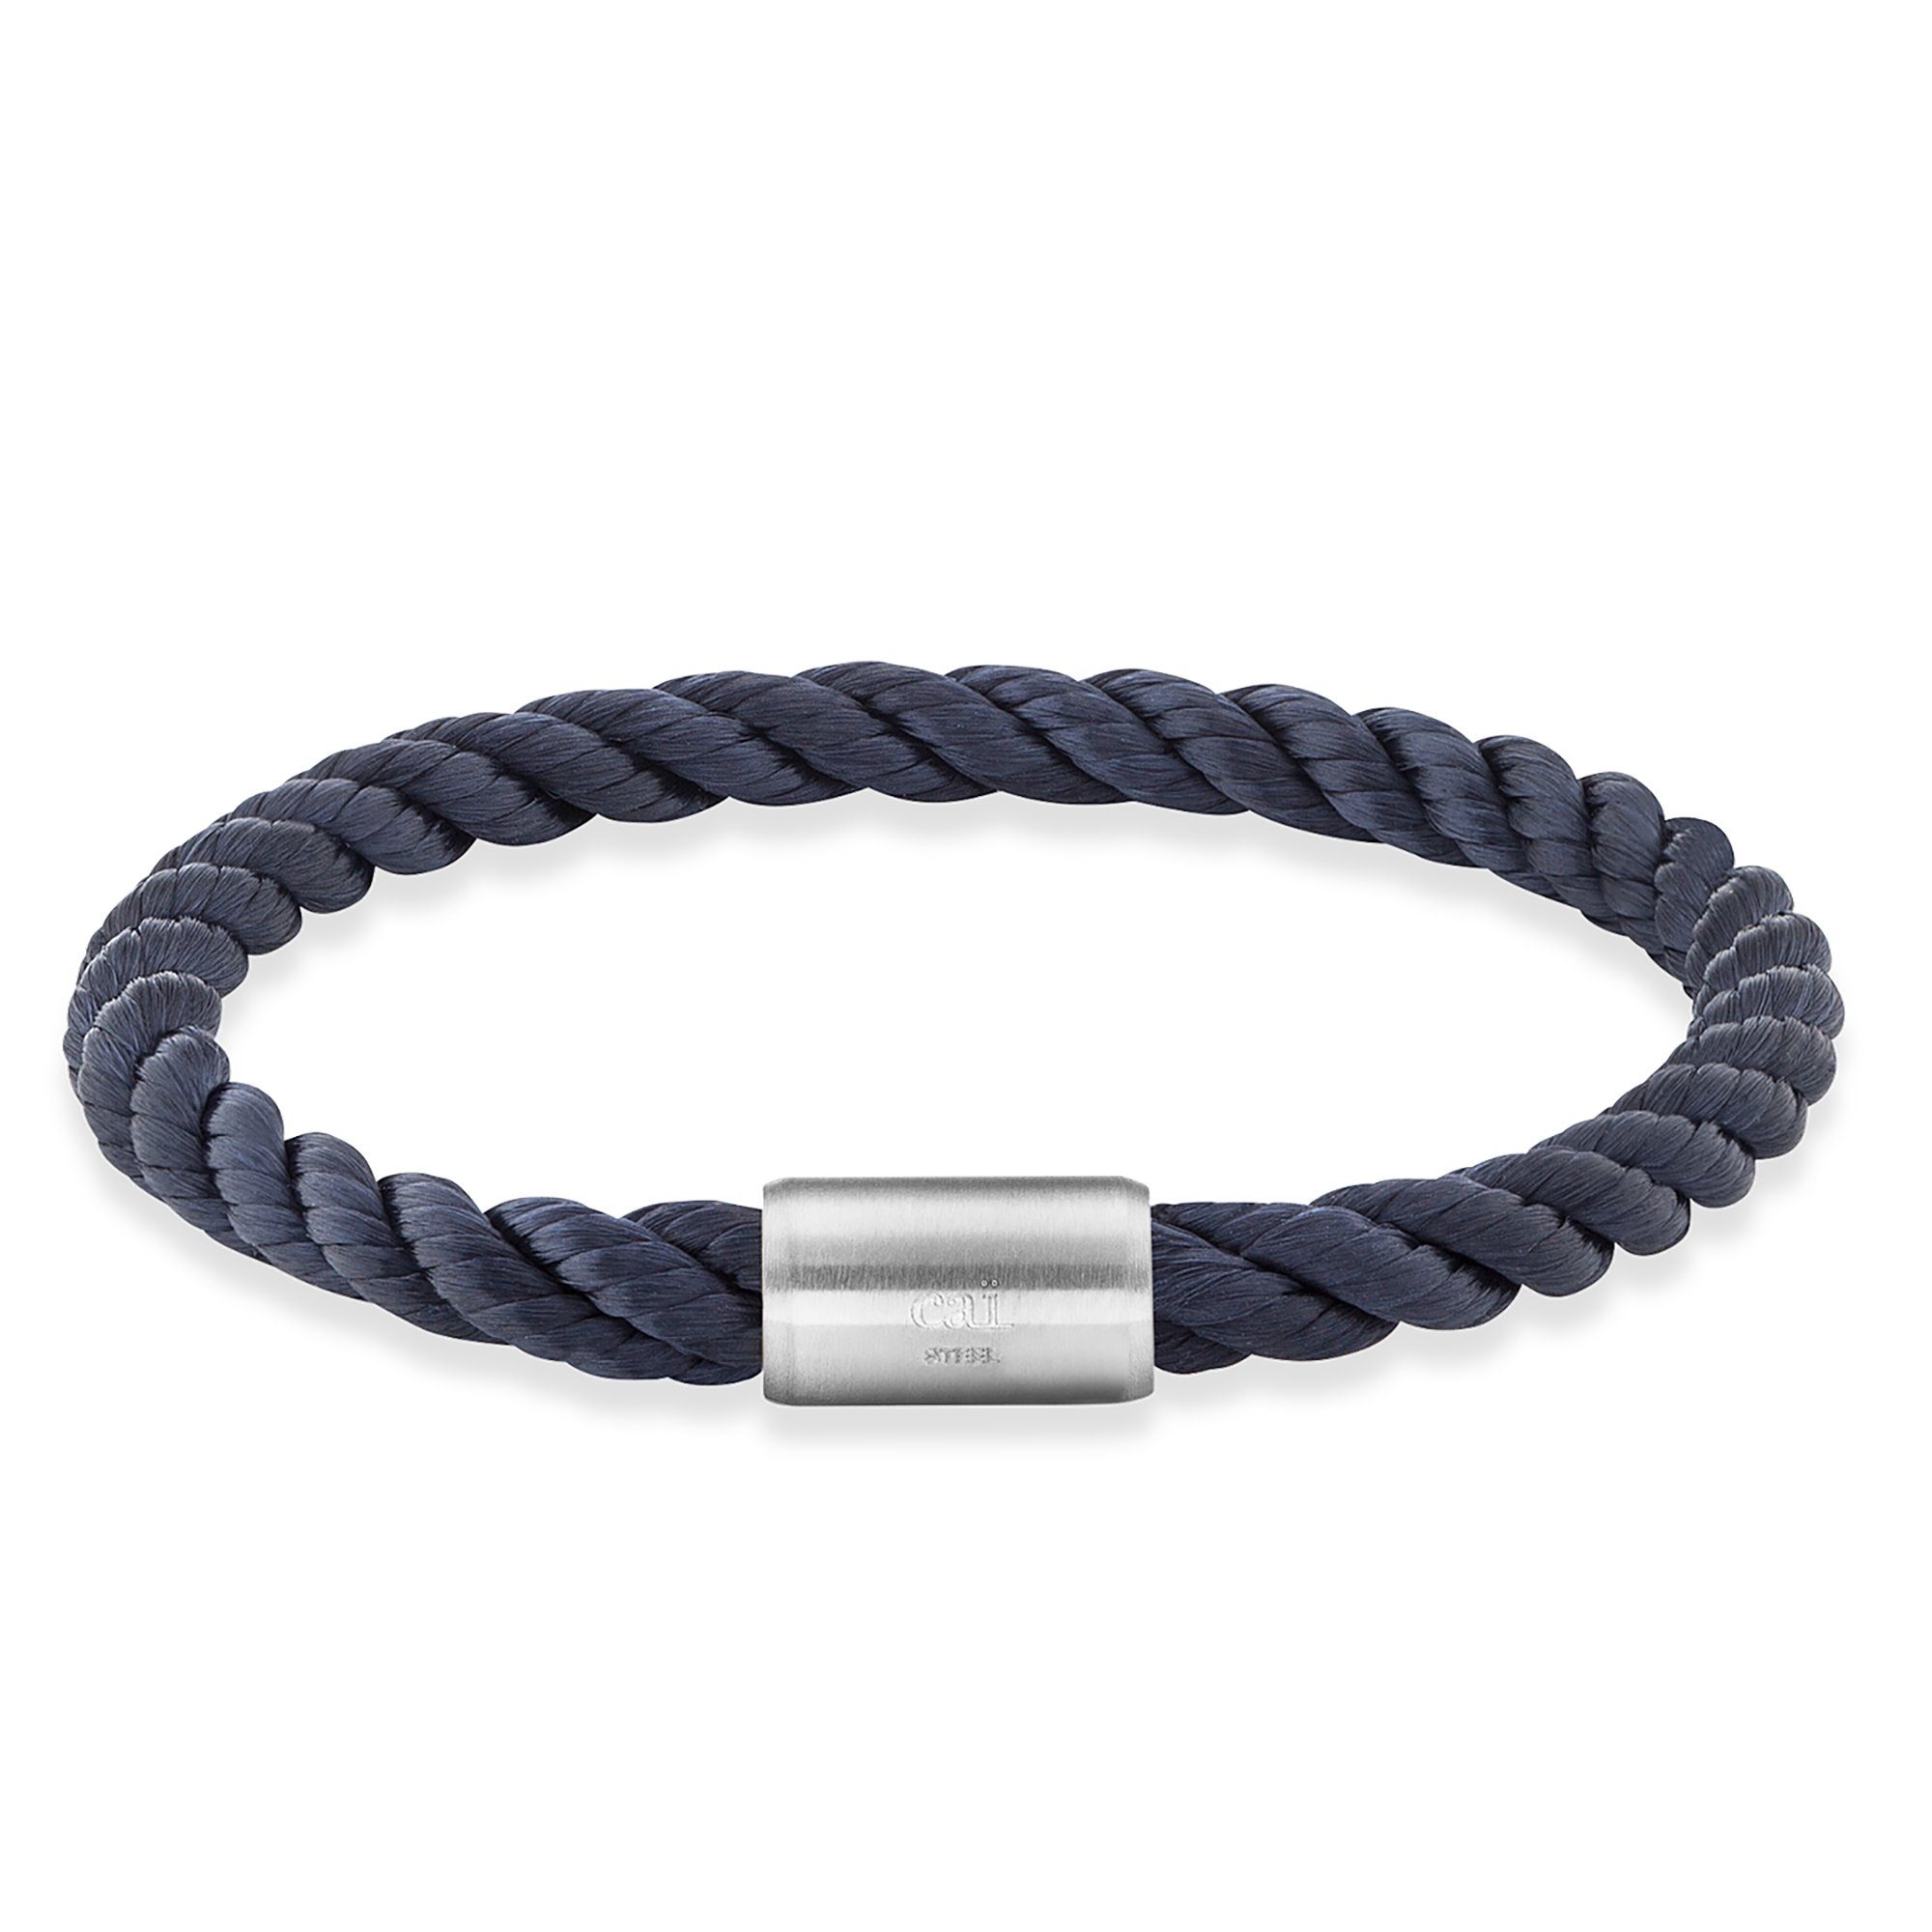 Kaufen Sie beliebte Artikel online CAÏ Armband Edelstahl Textilband Navy blau 20cm